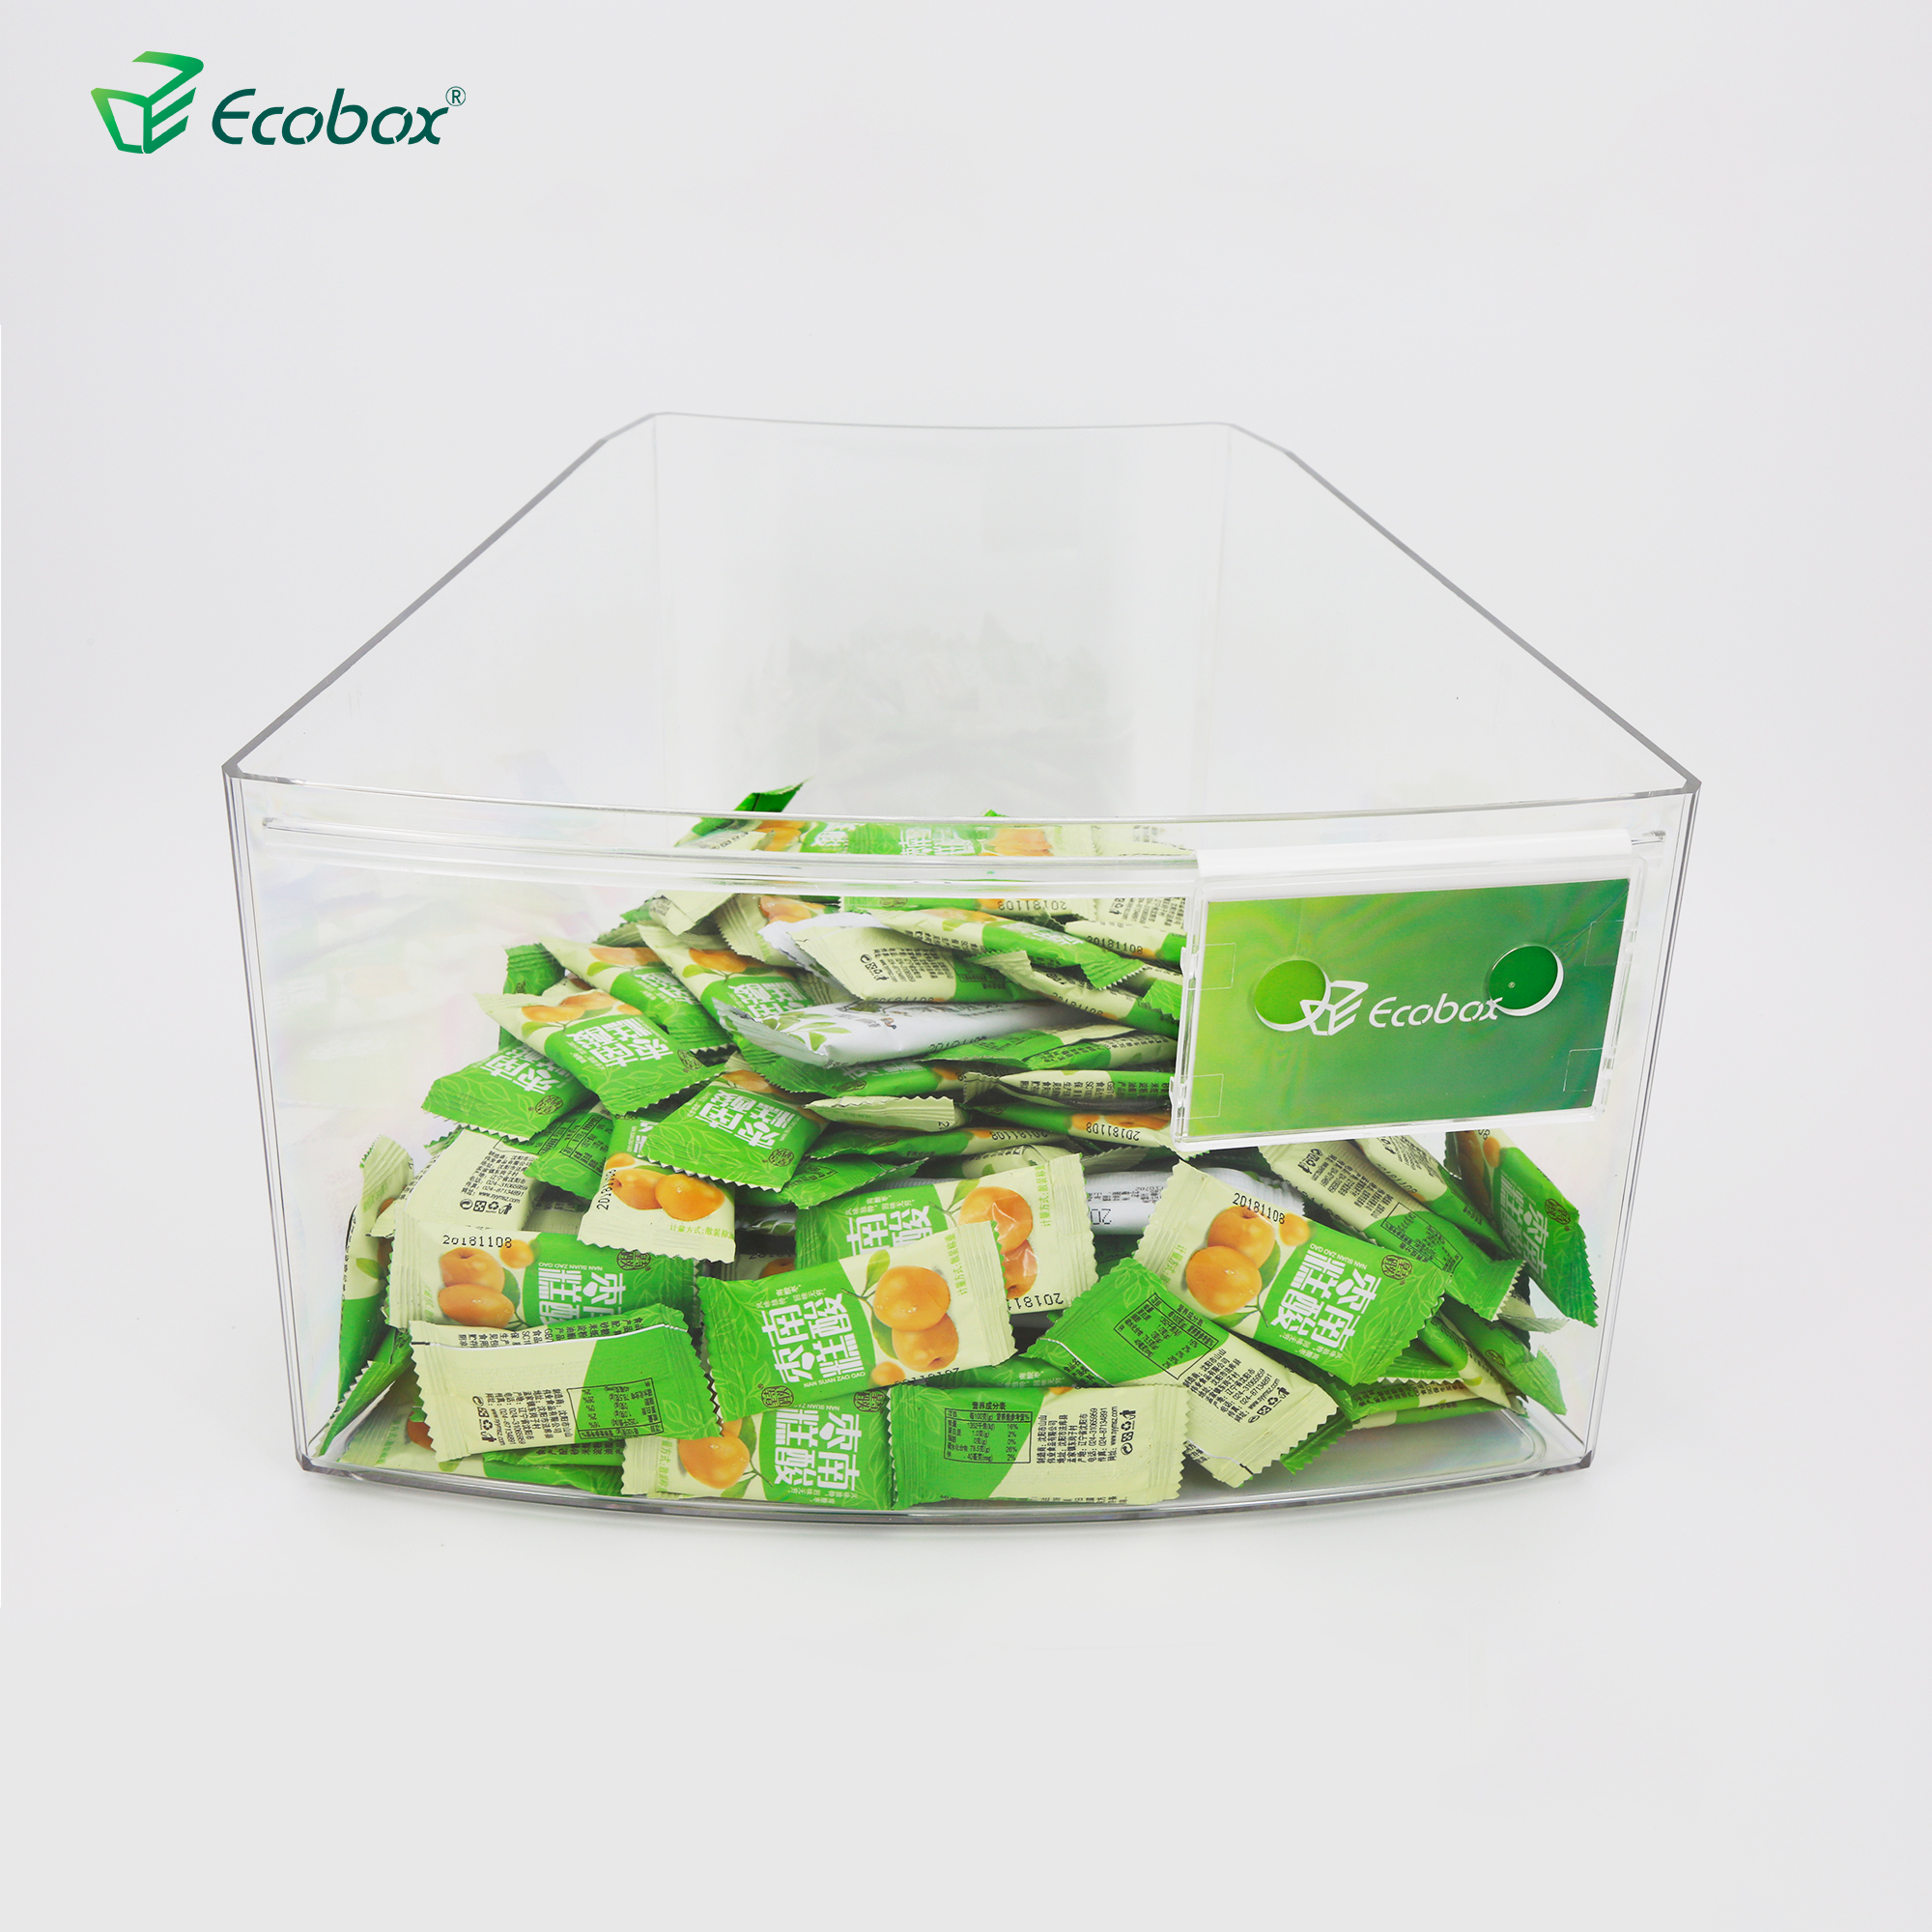 Ecobox SPH-018 Supermarkt Schüttbehälter für runde Insel Regal